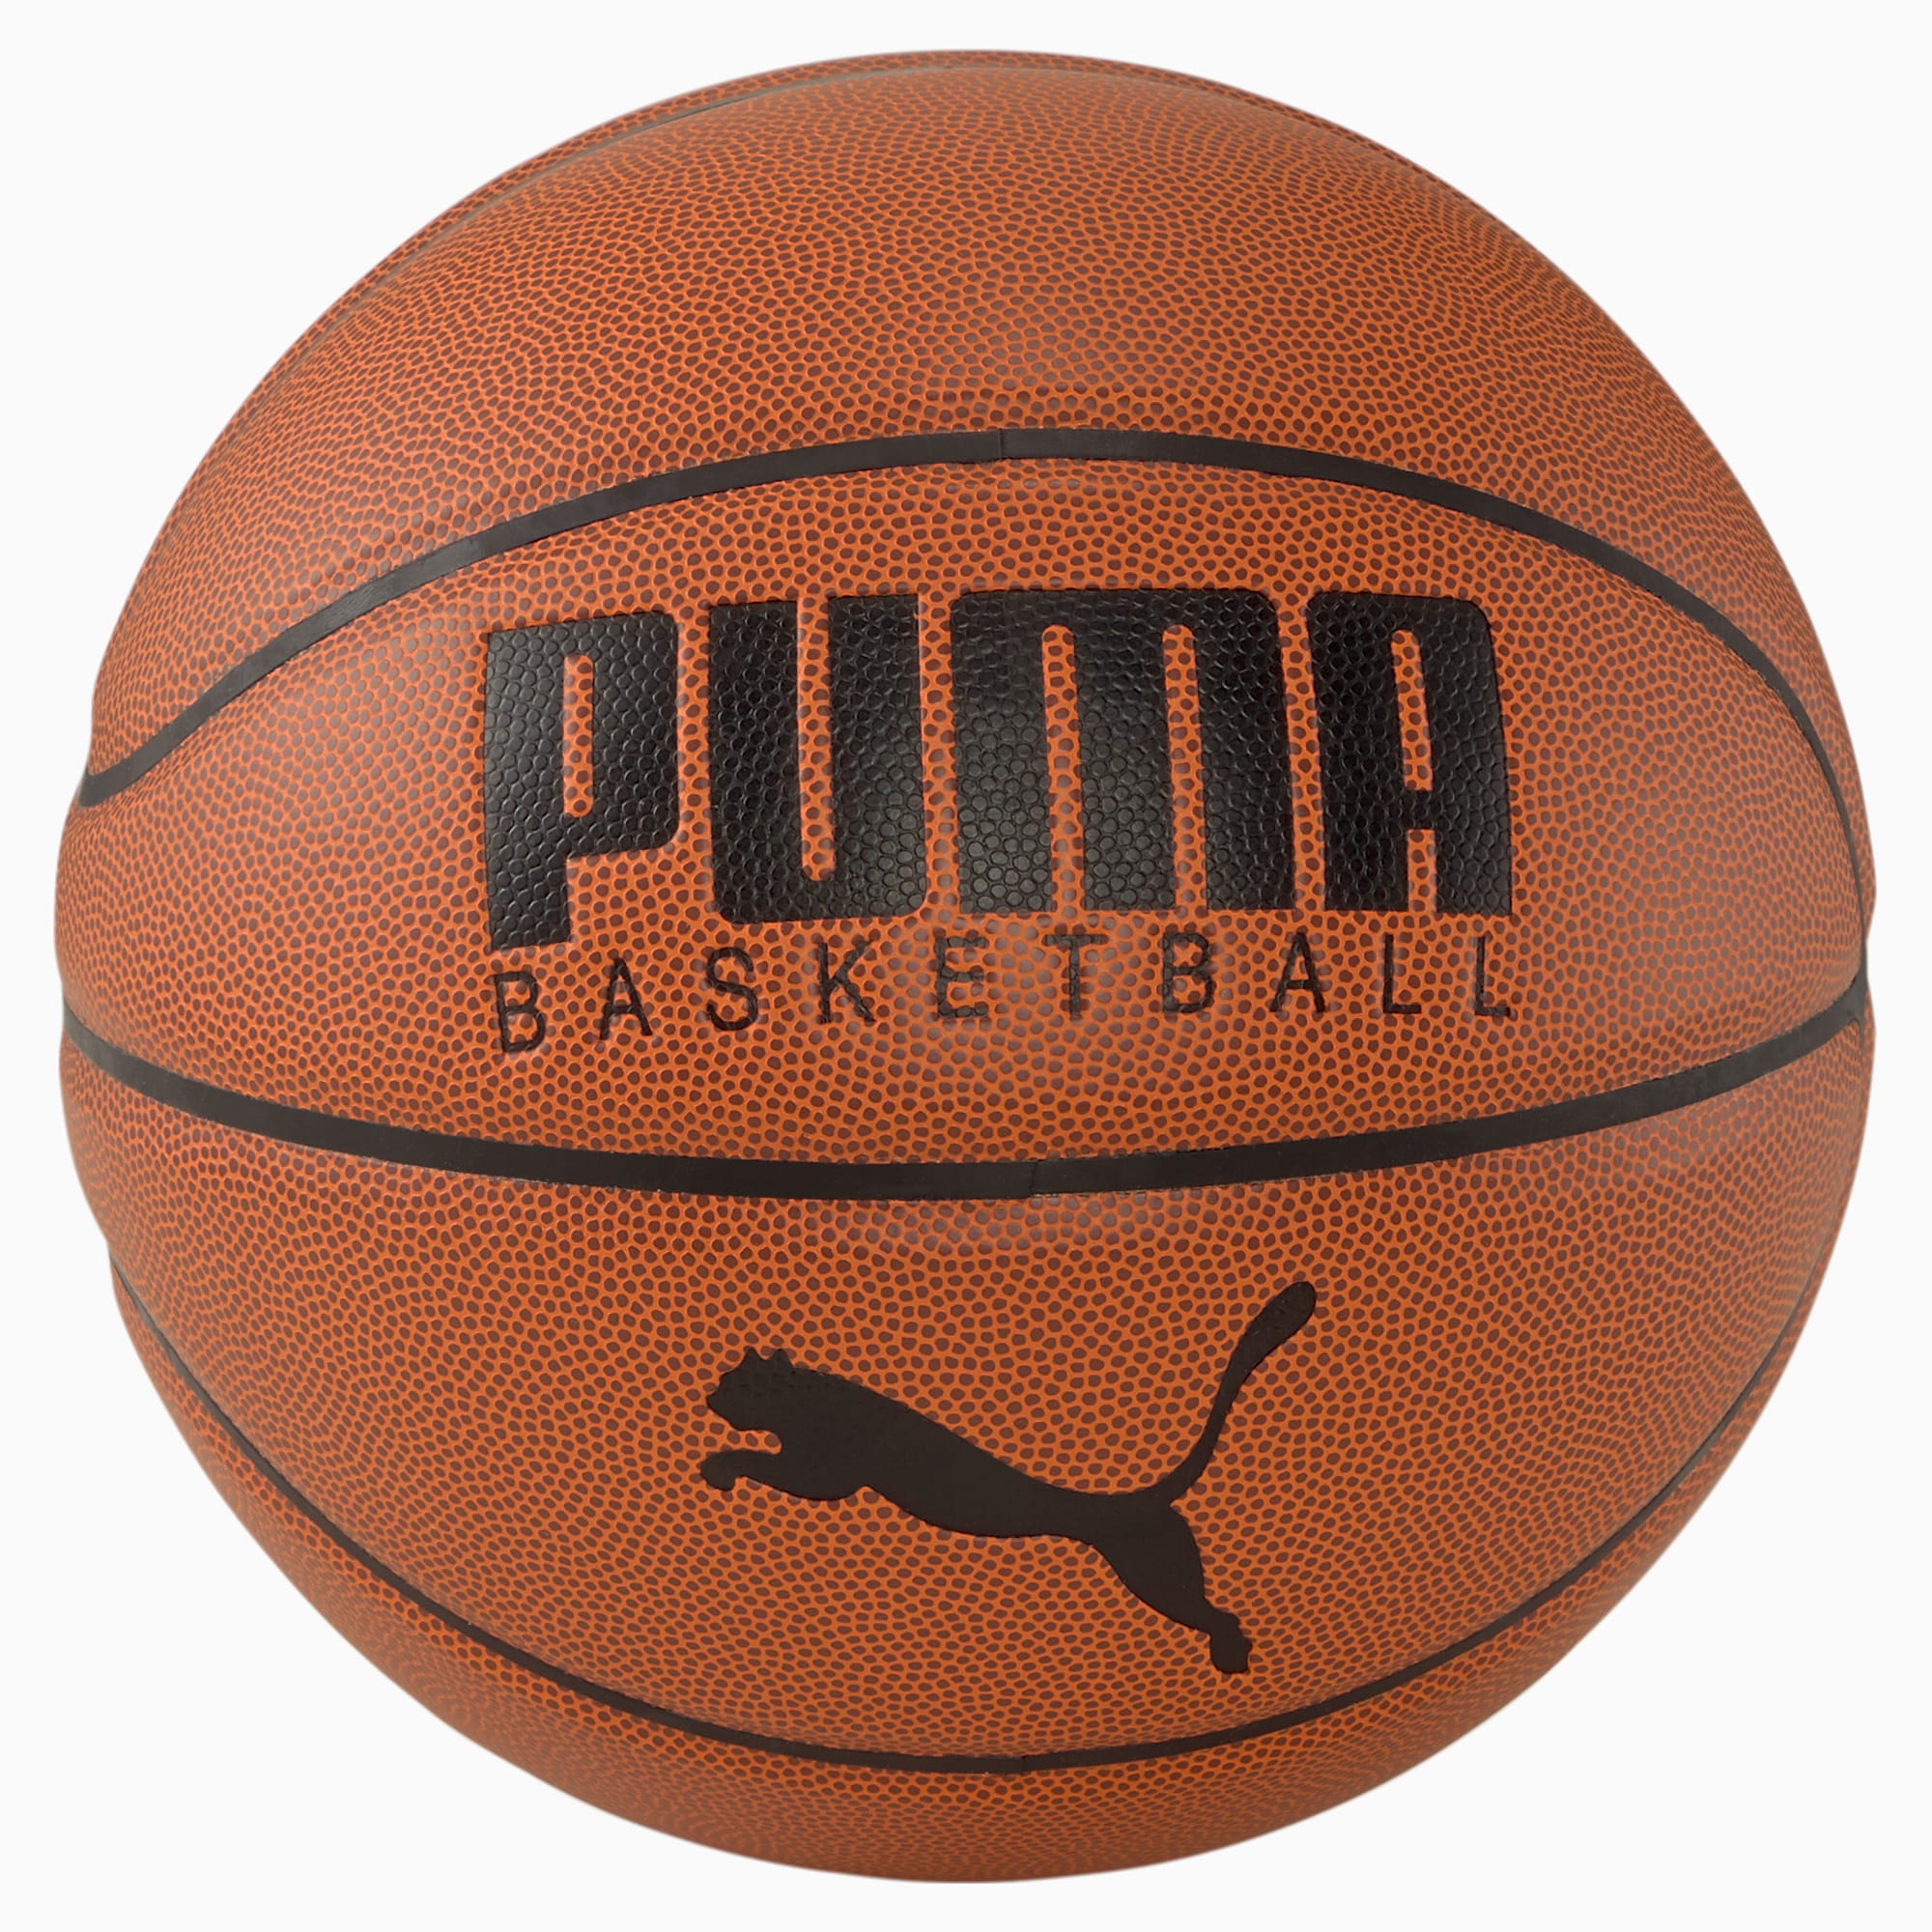 Ballon PUMA Basketball Top, Marron/Noir, Taille 7, Accessoires